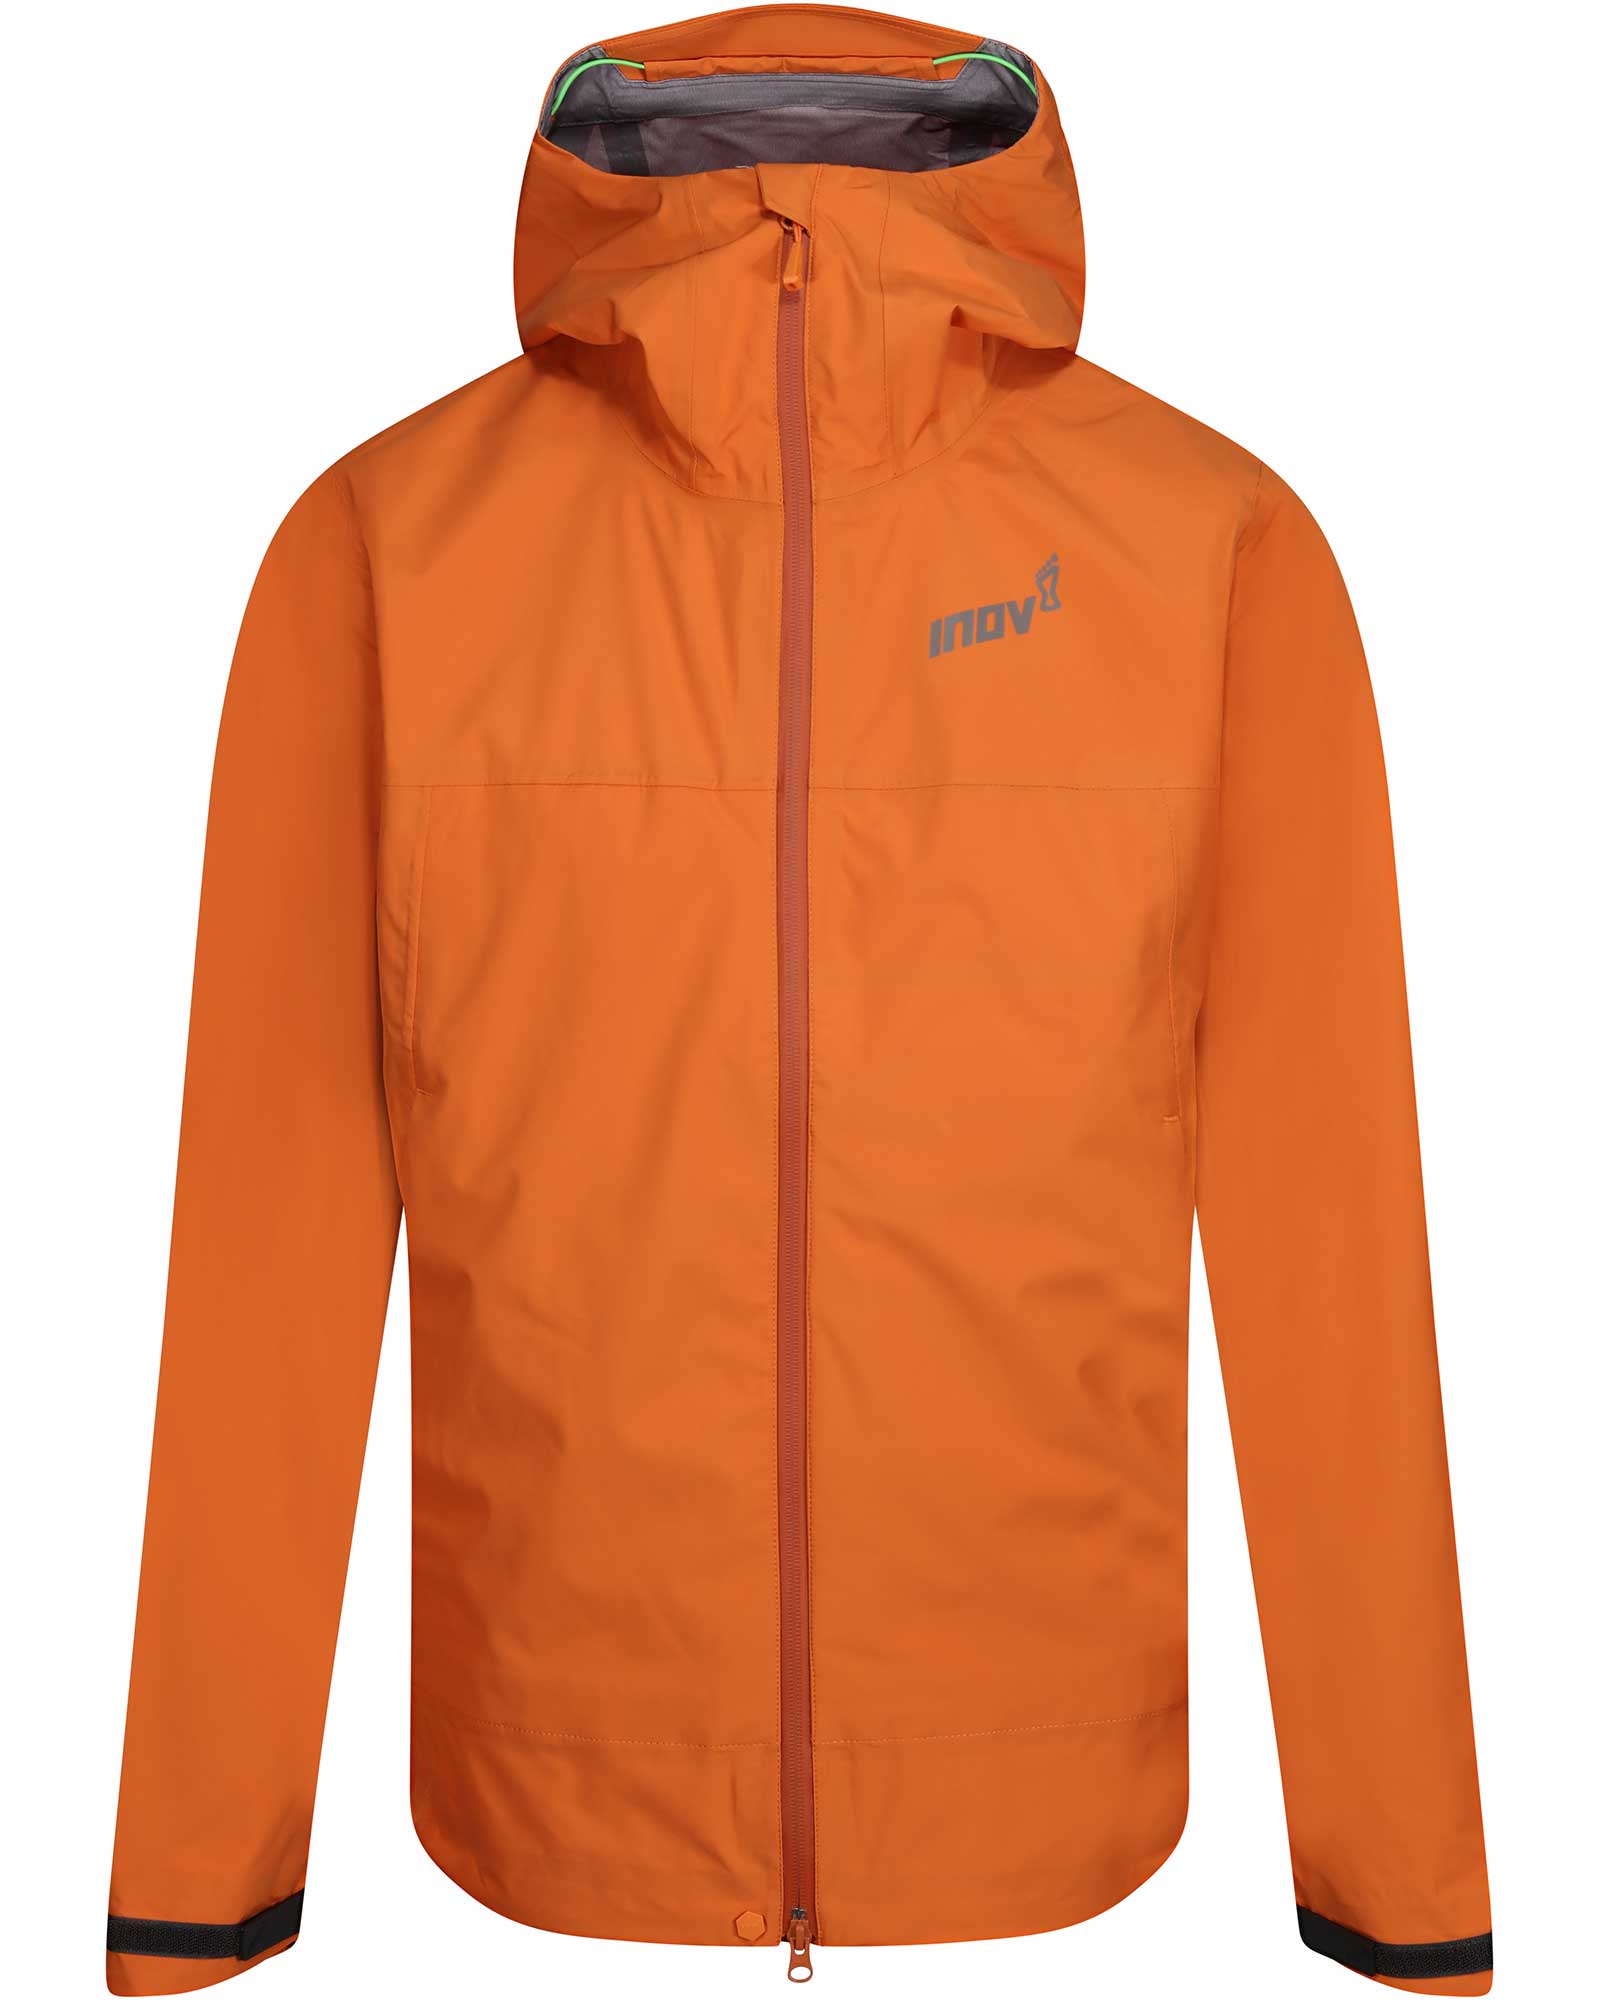 Inov 8 VentureLite Men’s Full Zip Jacket - Orange S